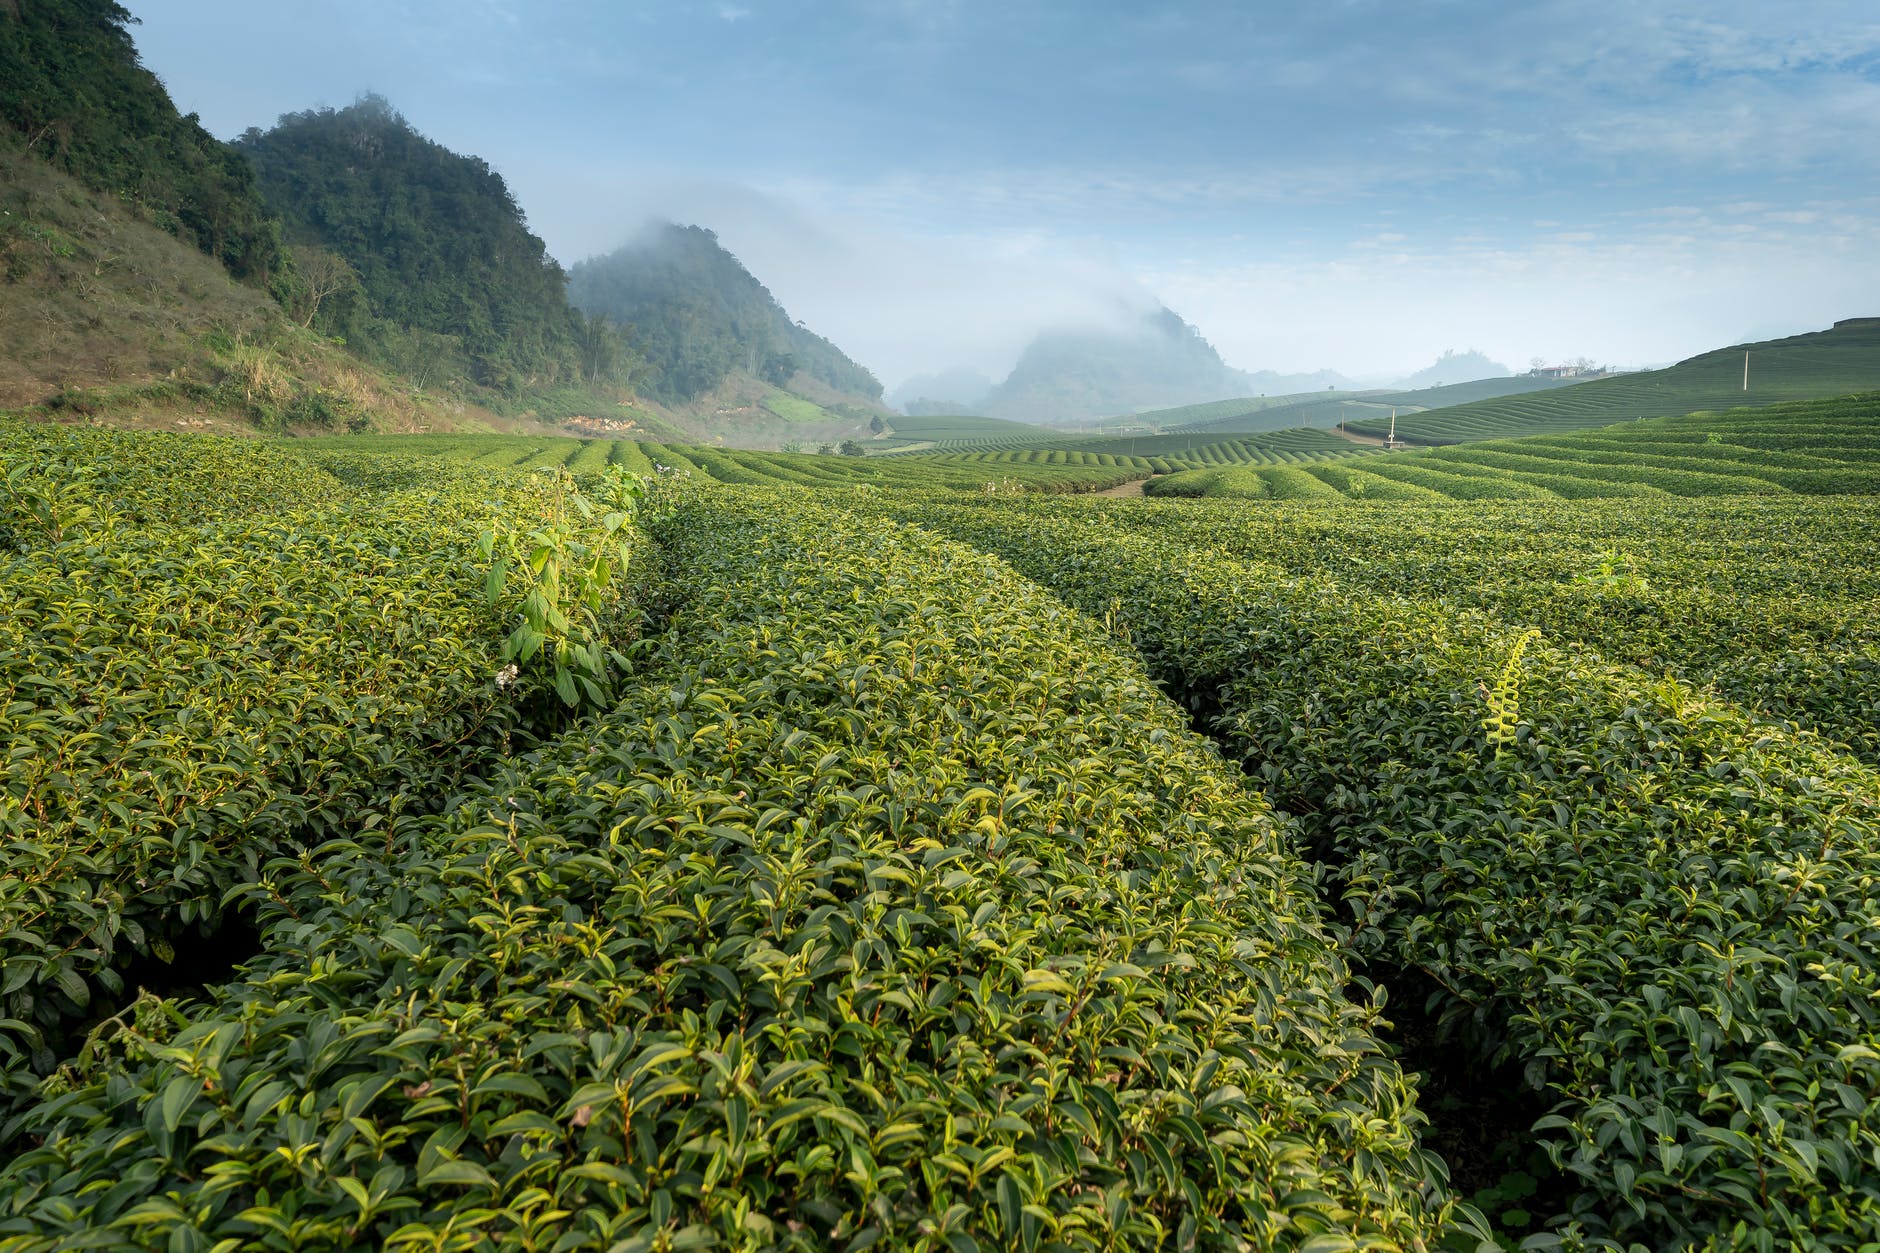 Green tea contains beneficial antioxidants